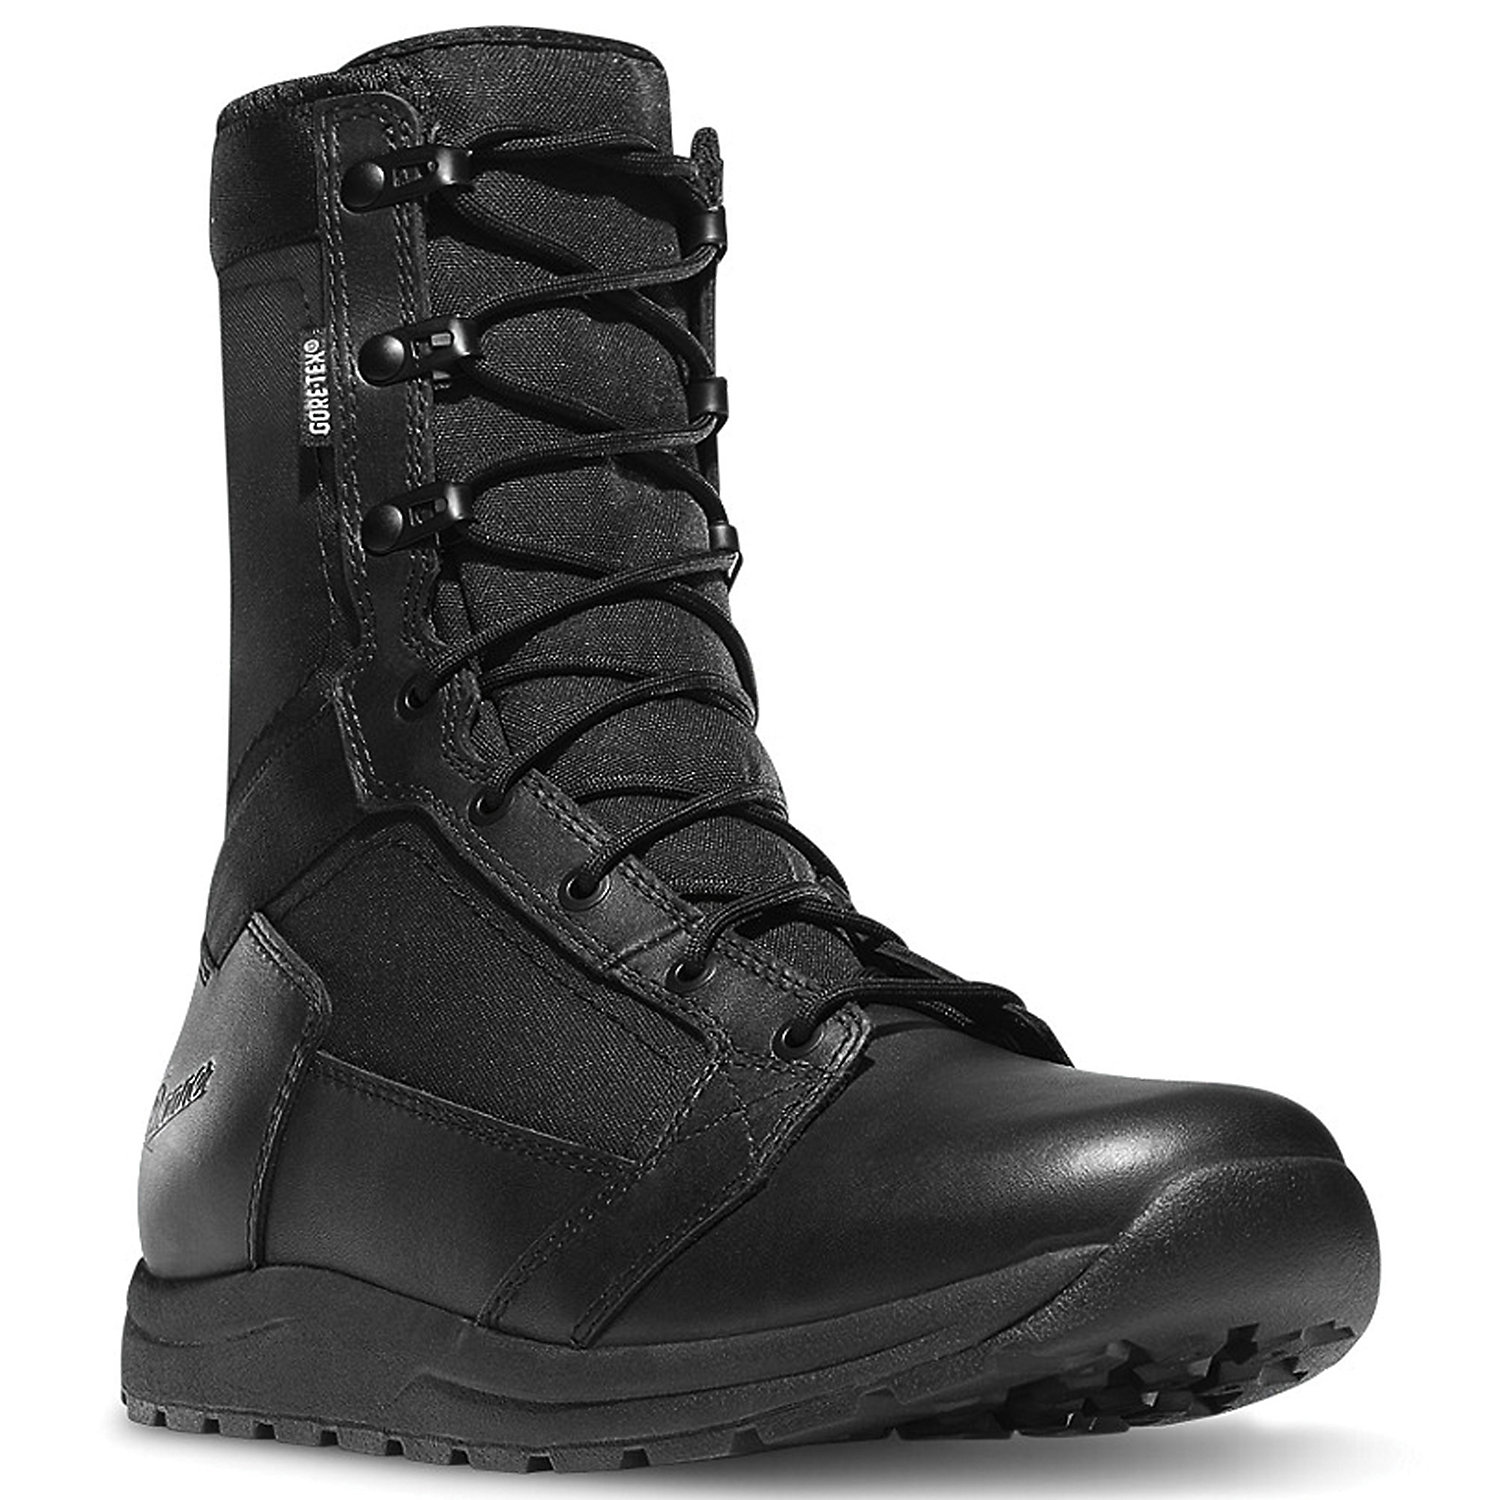 Danner Men's Tachyon GTX 8IN Boot - 3D, Black